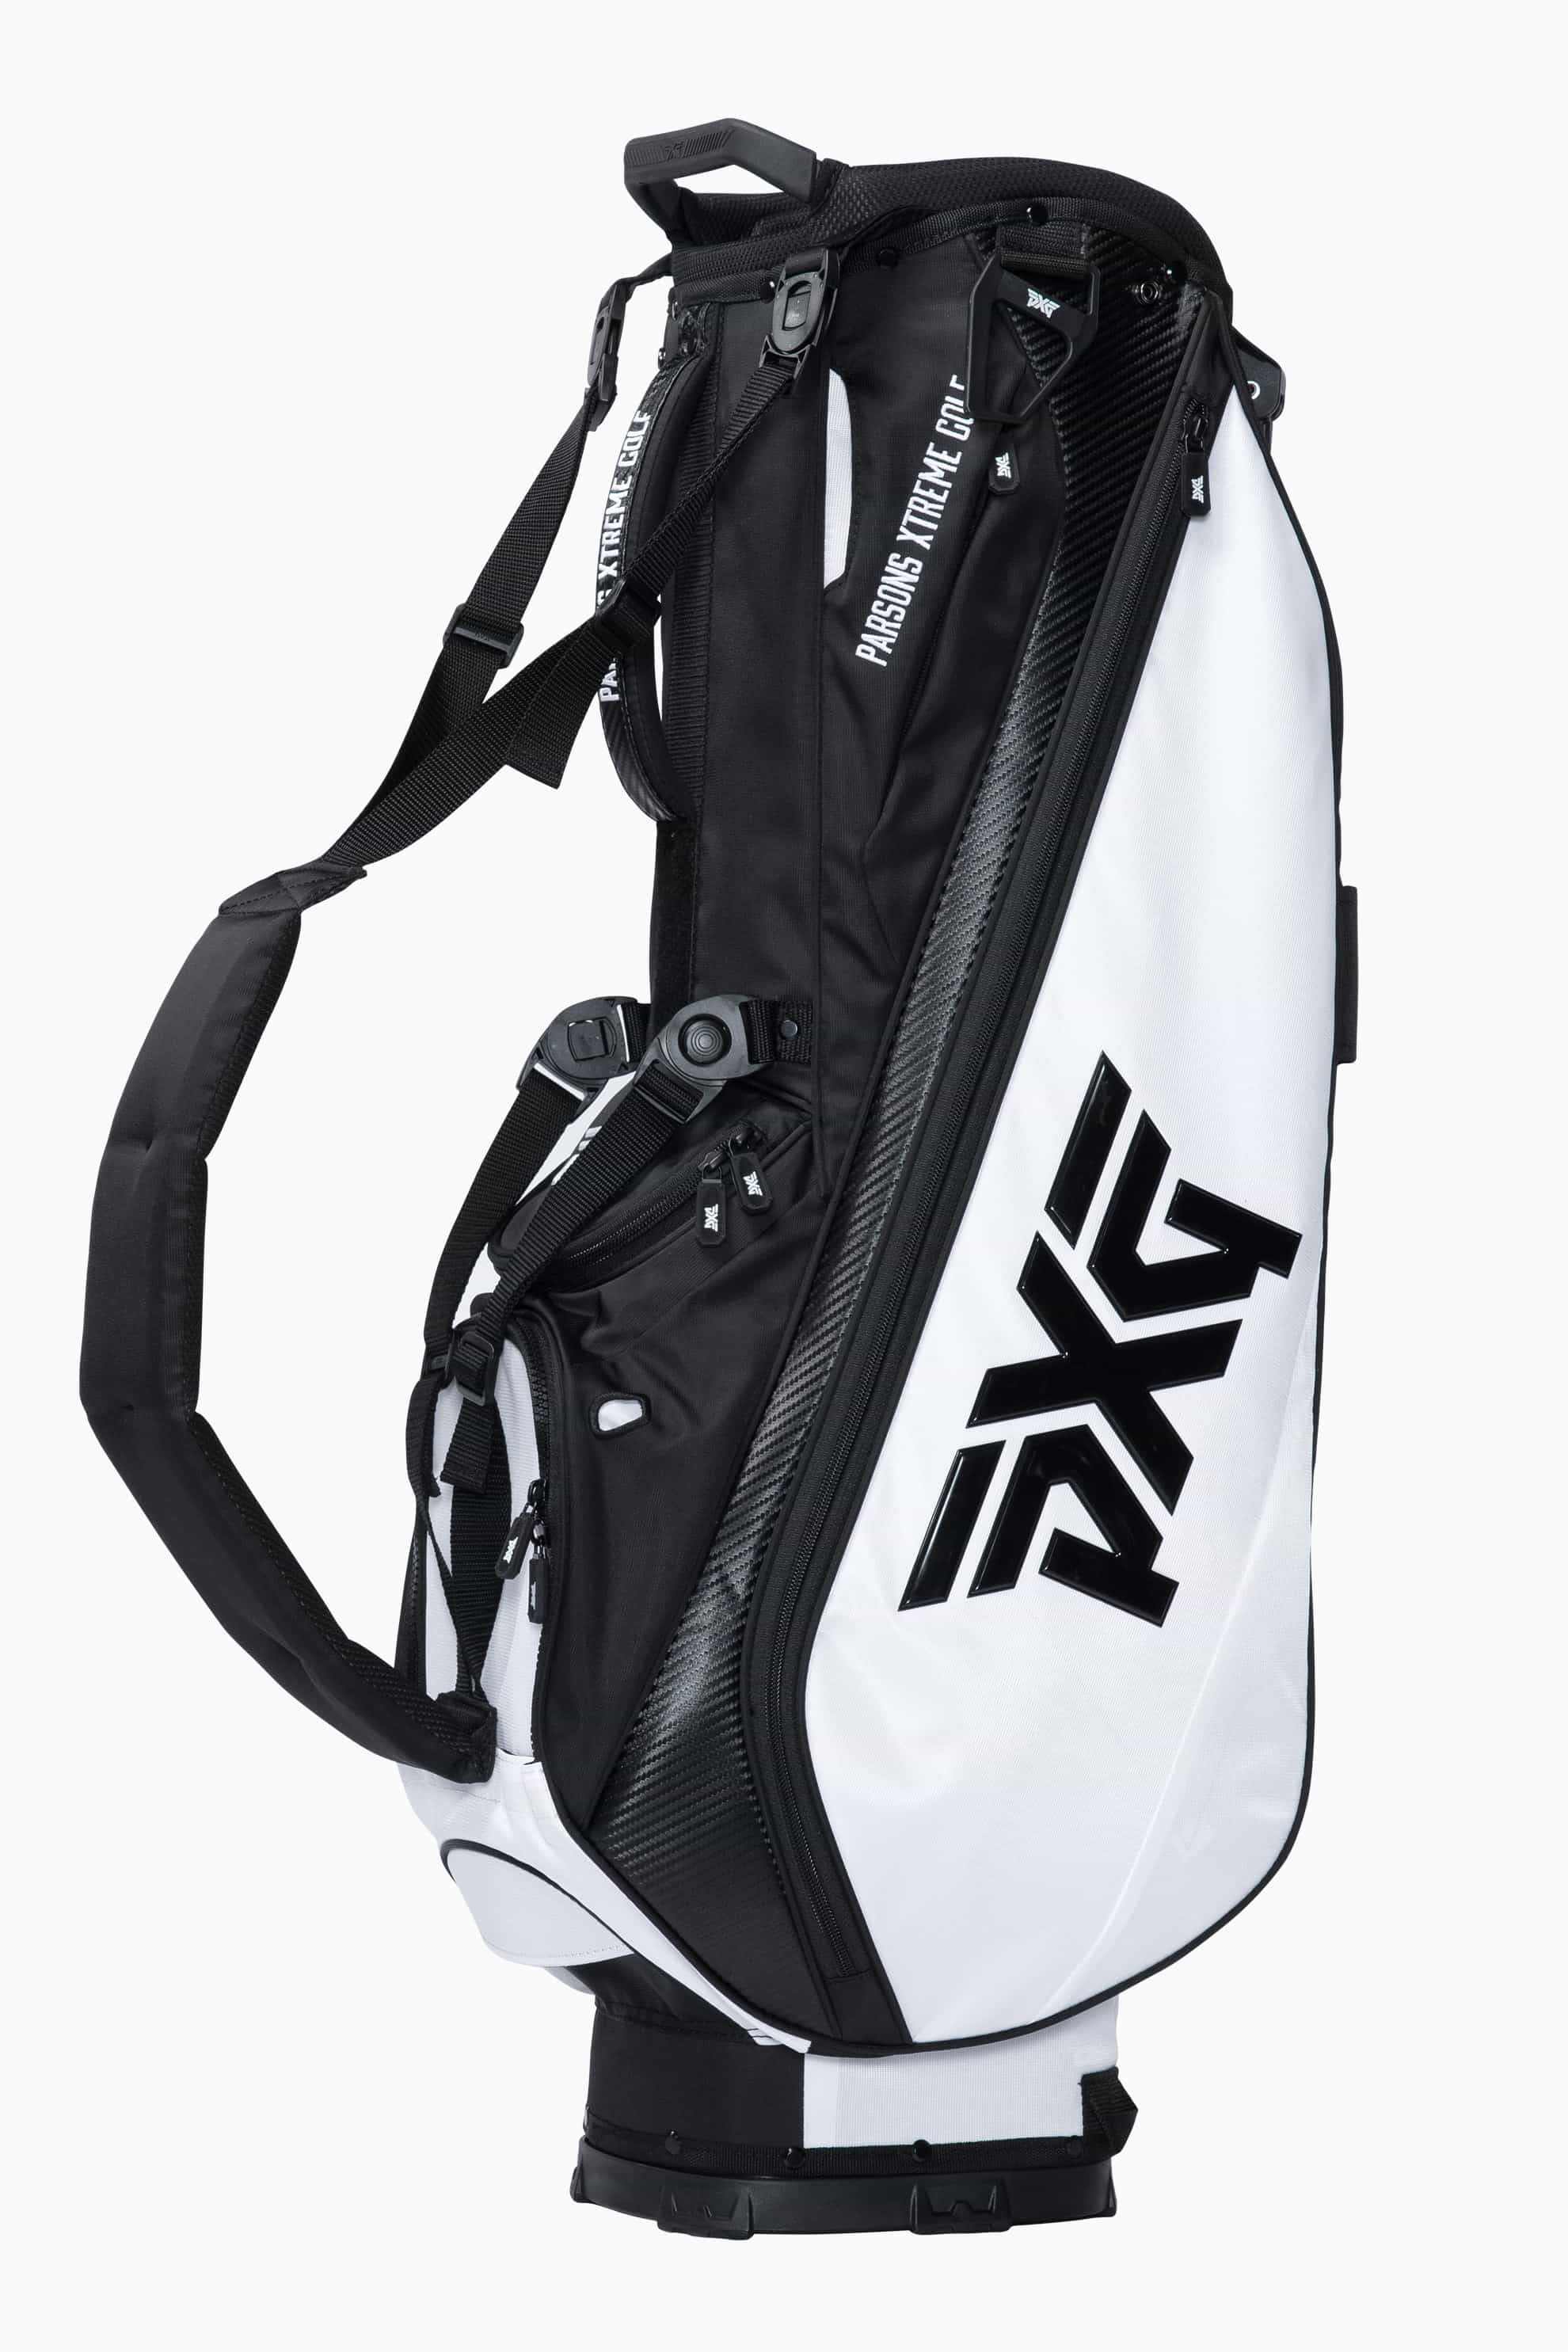 LIghtweight Carry Stand Bag | Golf Bags | Standing, Carry & Cart ...